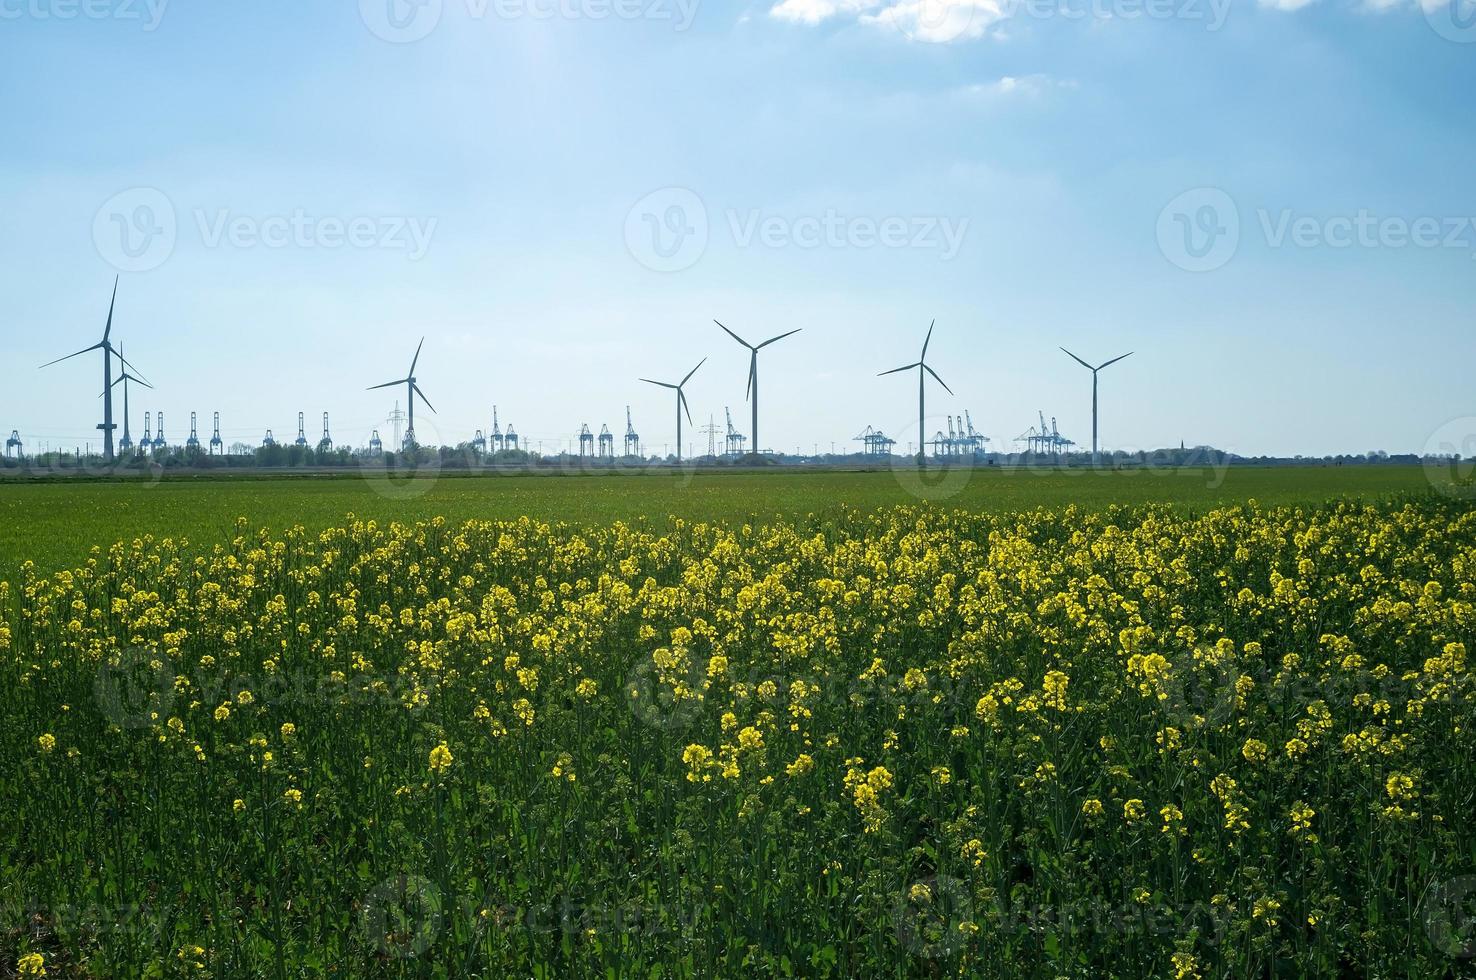 campo com uma planta de mostarda em flor, tendo como pano de fundo turbinas eólicas e um céu. sinapis utilizada como adubo verde na agricultura. foto